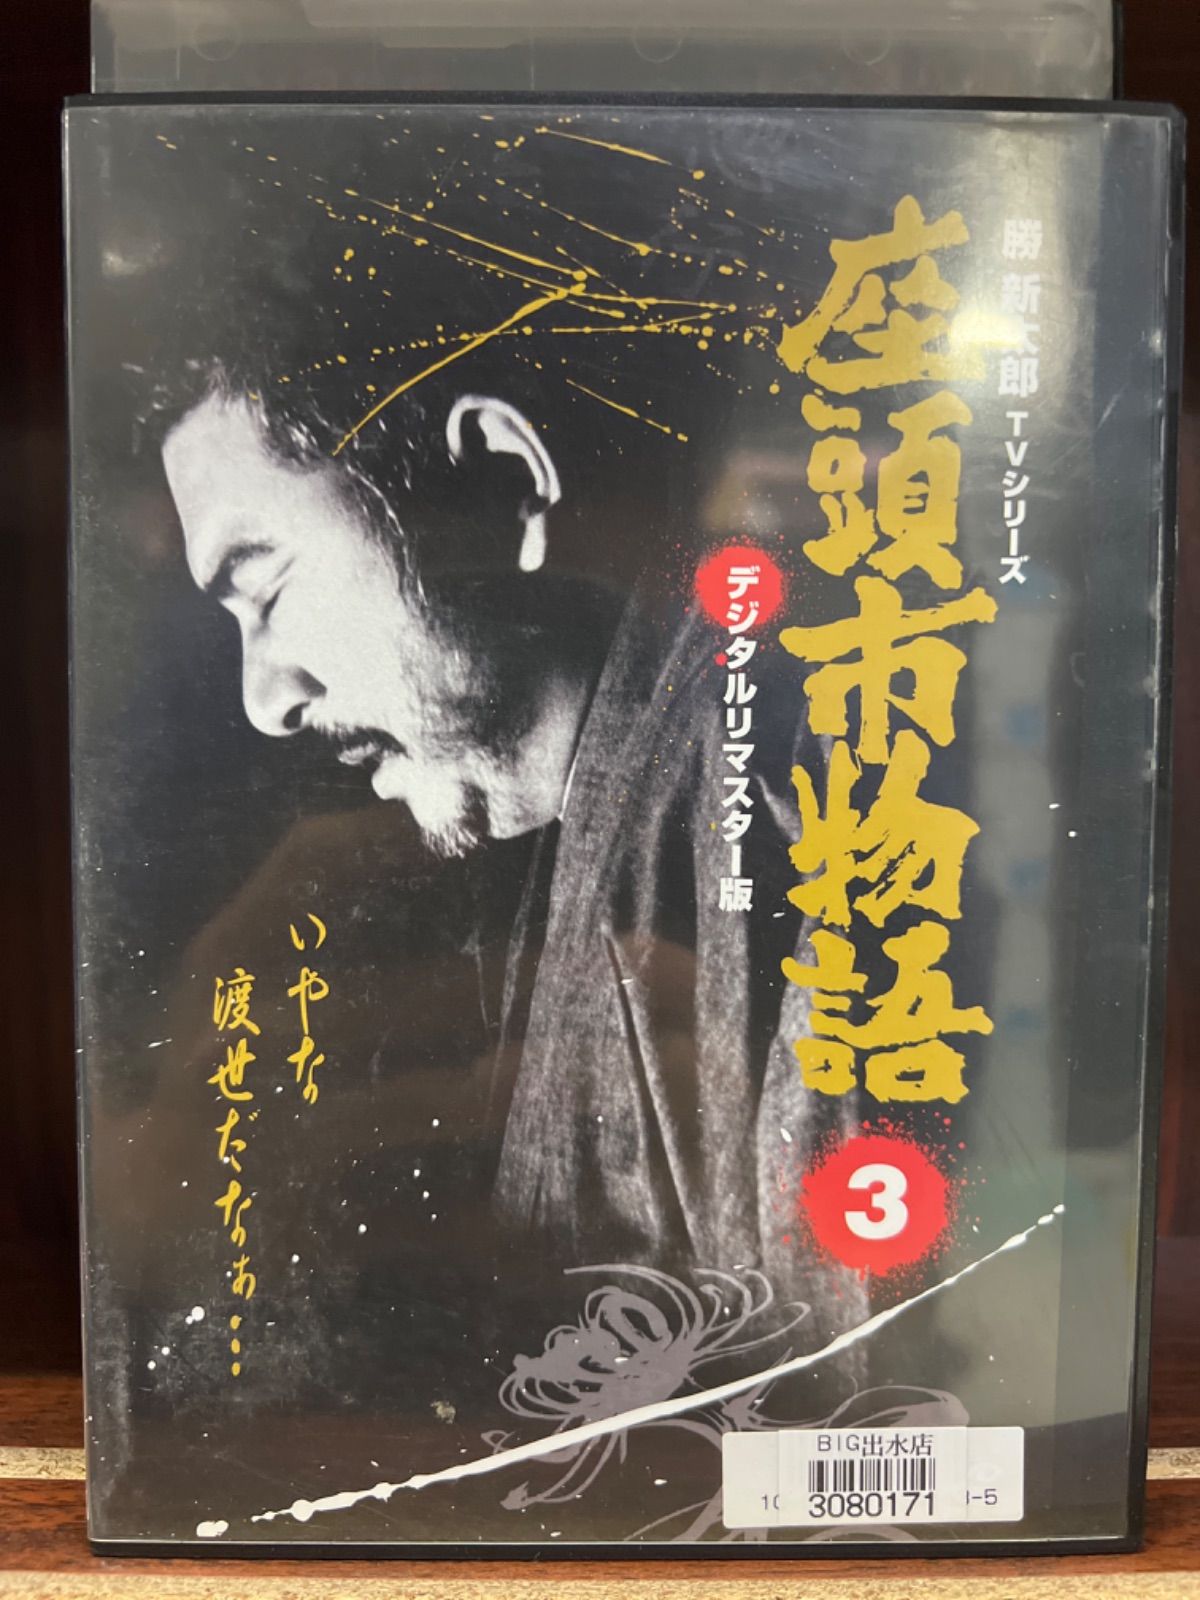 座頭市物語 DVD-BOX(8枚組)』勝新太郎TVシリーズ デジタルリマスター ...